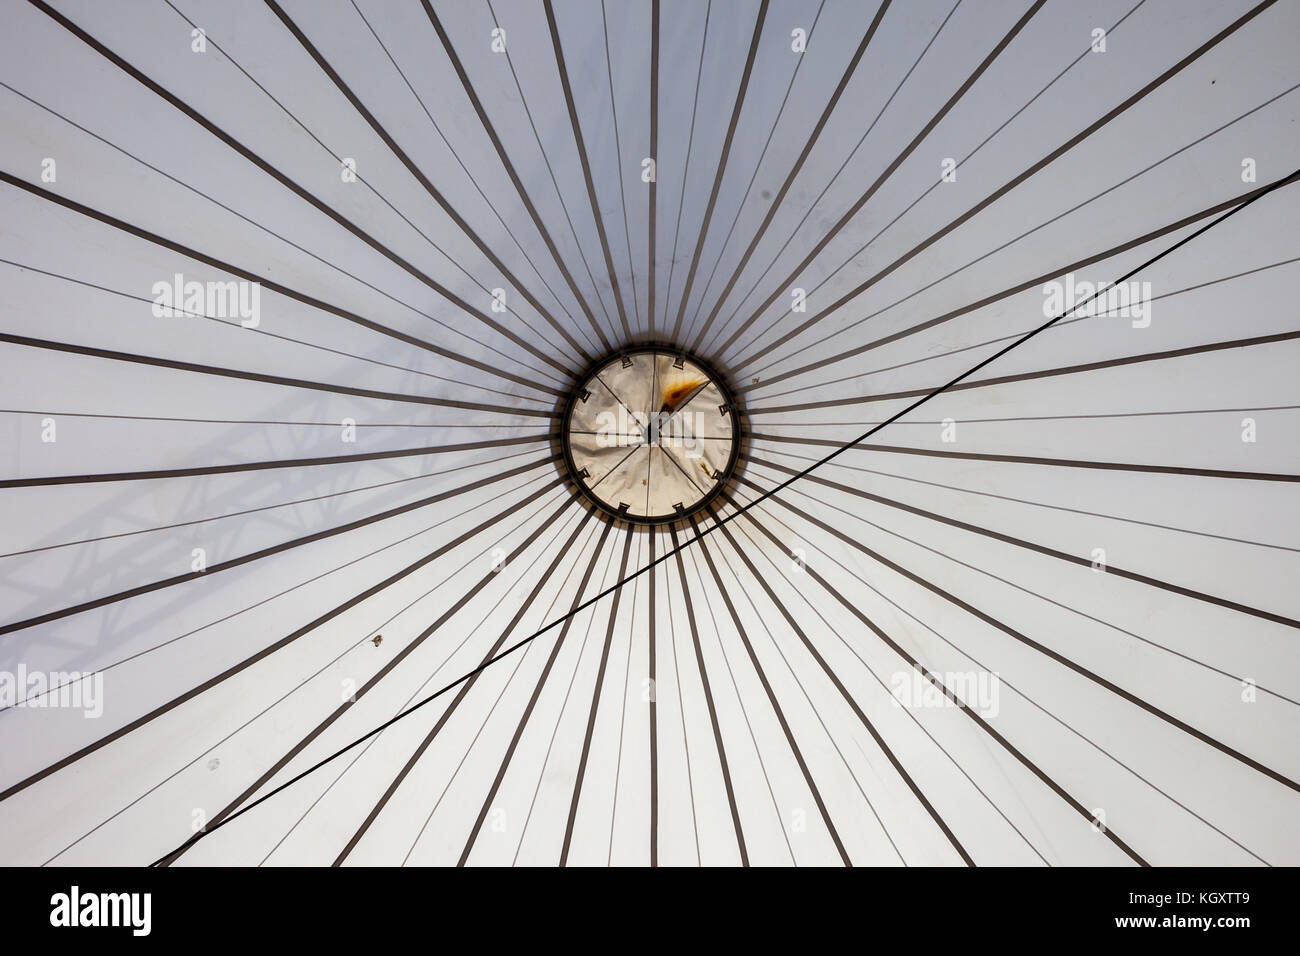 Sfondo astratto di tenda a soffitto, modello di linee convergenti al cerchio al centro Foto Stock